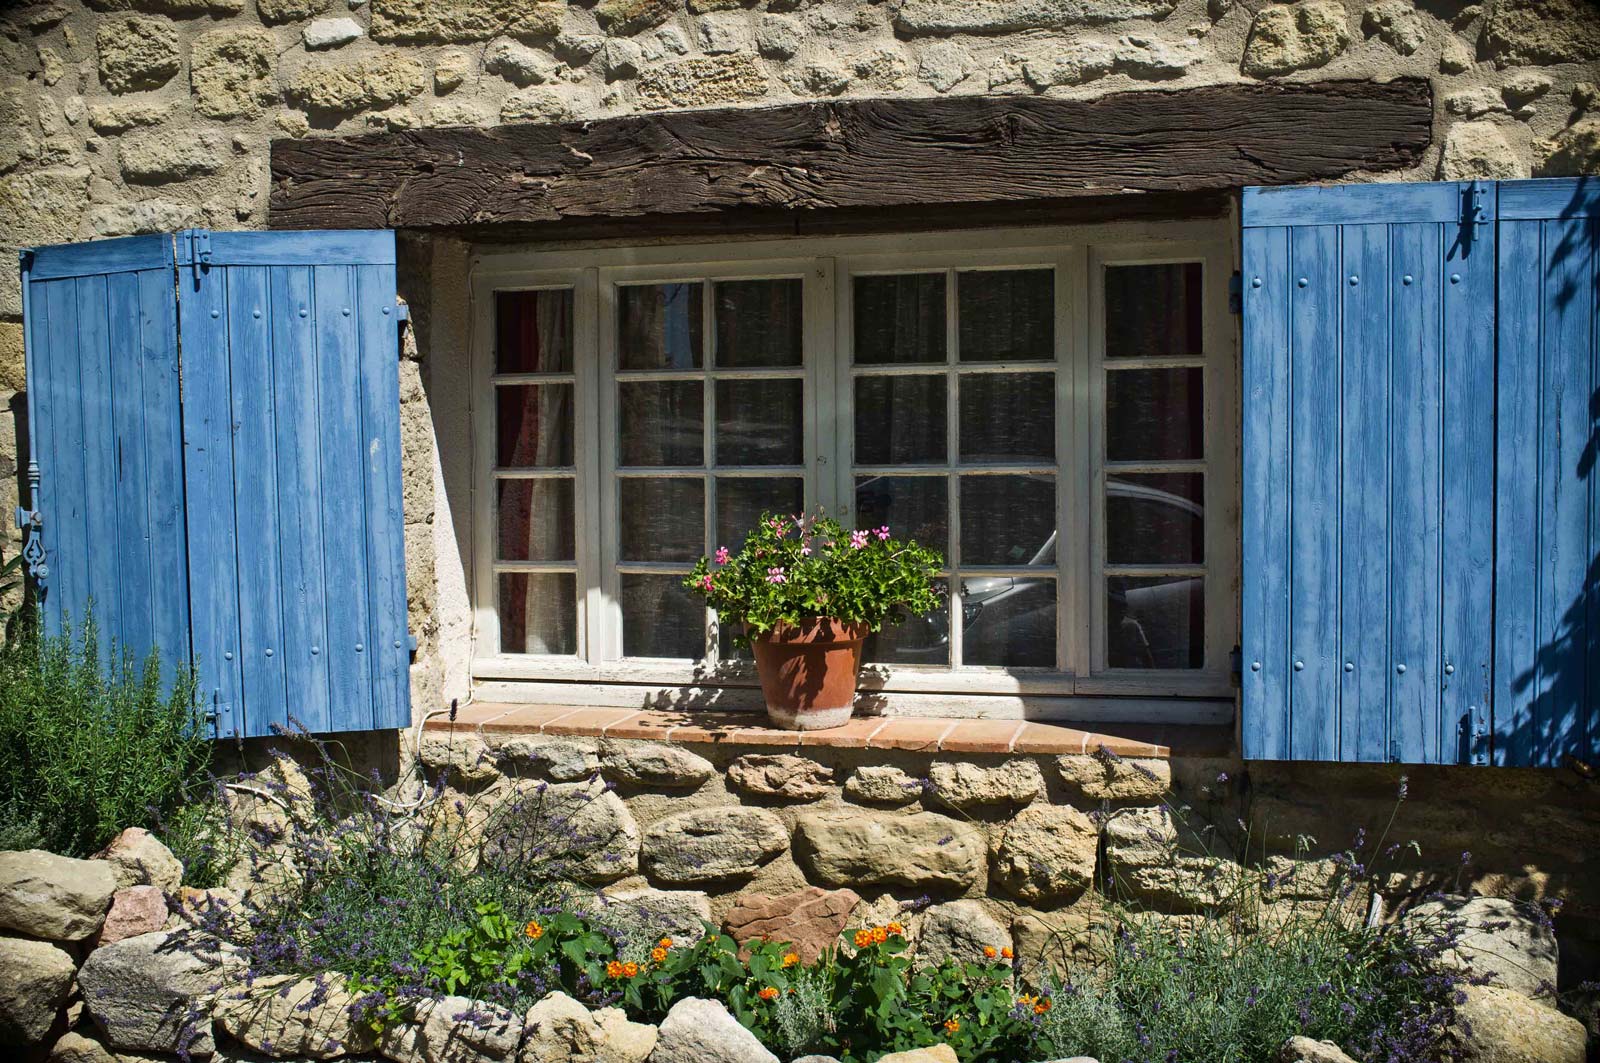 Wooden shutters on windows